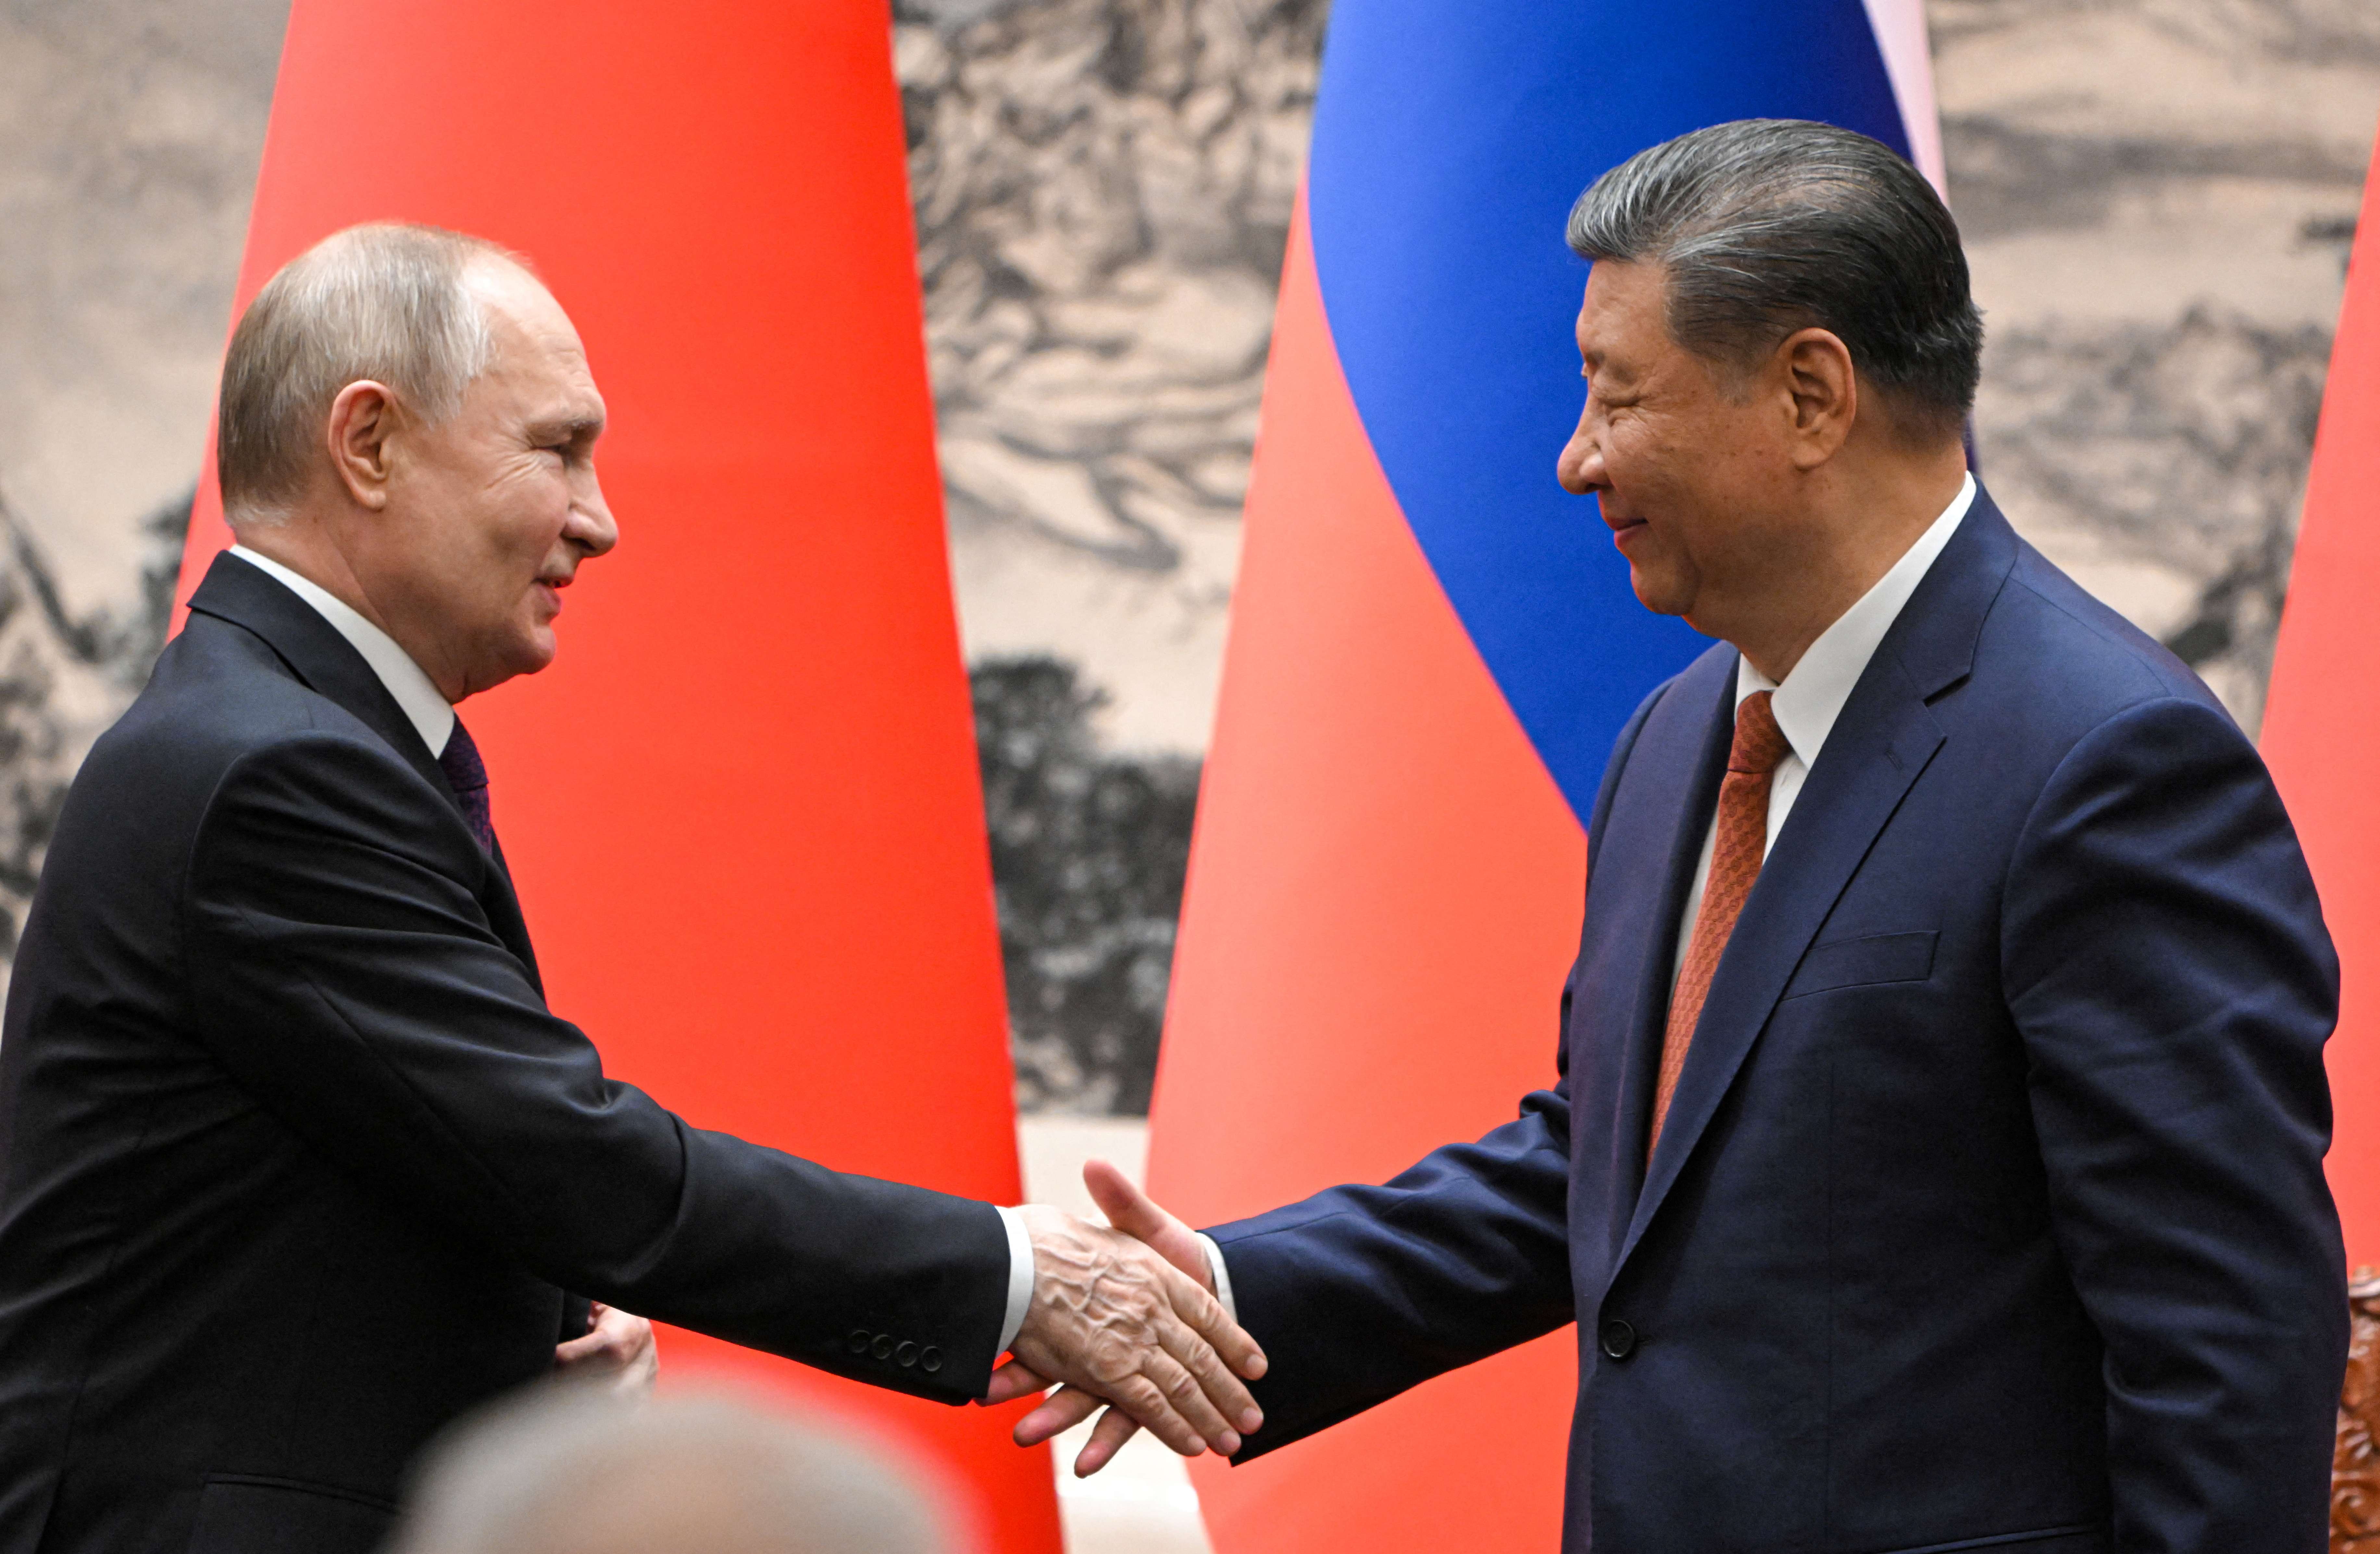 O presidente russo, Vladimir Putin, aperta a mão do presidente chinês, Xi Jinping, durante uma reunião em Pequim, China, em 16 de maio de 2024. Sputnik/Sergei Guneev/Pool via REUTERS